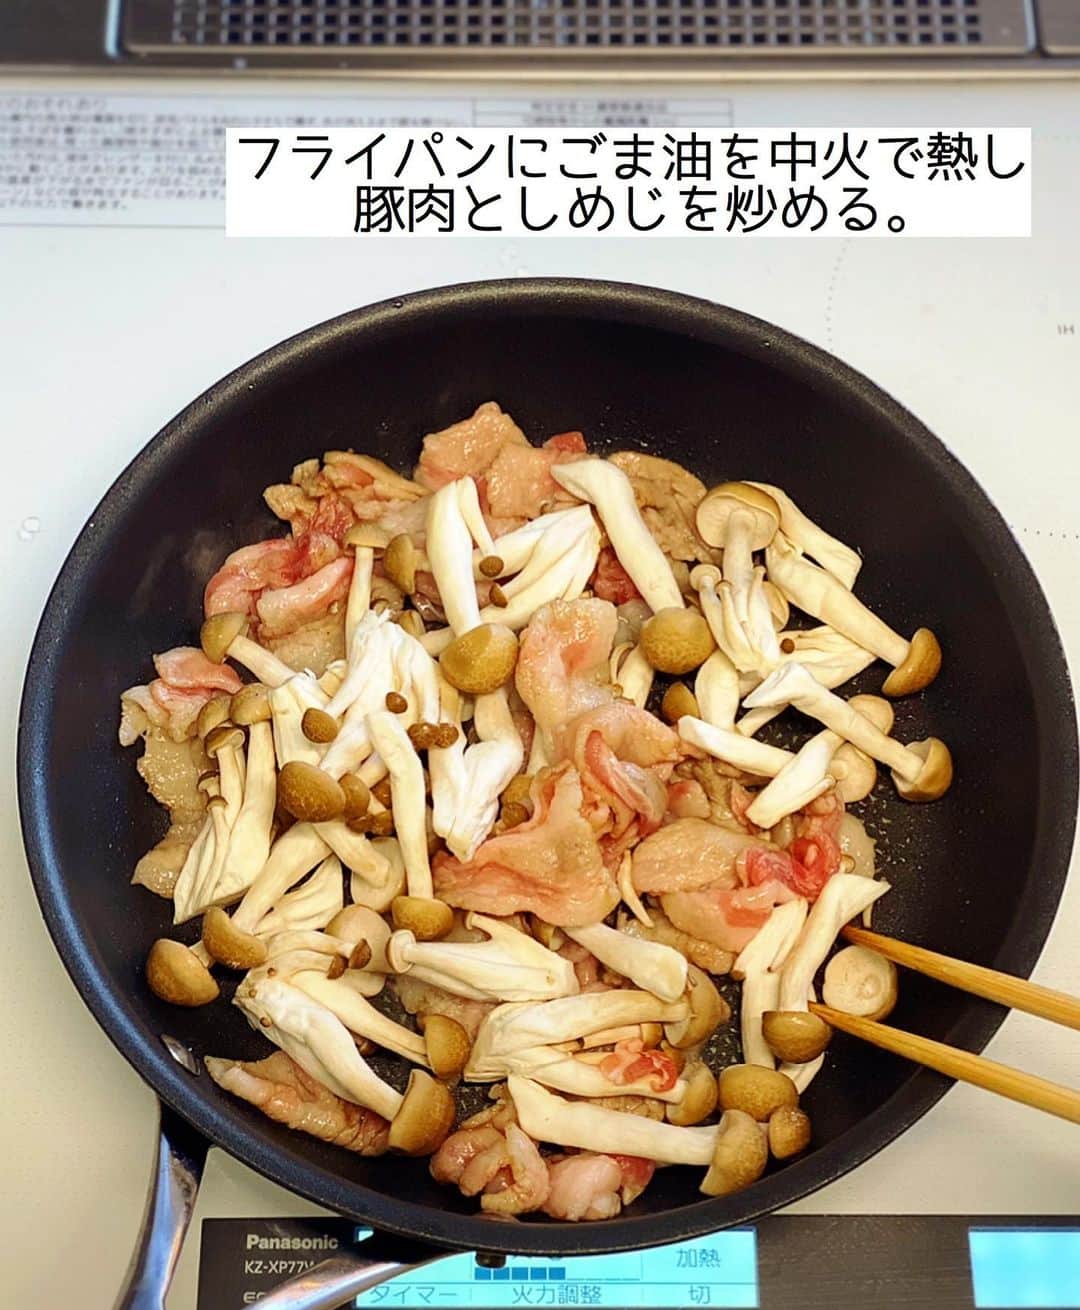 Mizuki【料理ブロガー・簡単レシピ】さんのインスタグラム写真 - (Mizuki【料理ブロガー・簡単レシピ】Instagram)「・﻿ 【#レシピ 】ーーーーーーーー﻿ ♡豚肉ときのこのおろし煮♡﻿ ーーーーーーーーーーーーーー﻿ ﻿ ﻿ ﻿ おはようございます(*^^*)﻿ ﻿ 今日ご紹介させていただくのは﻿ \ 豚肉ときのこのおろし煮 /﻿ ﻿ 食べ応えがあるのに﻿ あっさりヘルシー(*´艸`)﻿ 大根おろしは汁ごと加えて﻿ 余すことなくいただきますよ〜♩﻿ 豚肉にまぶした片栗粉効果で﻿ 煮汁がとろっとろに仕上がります♡﻿ ﻿ あっという間にできるので﻿ よかったらお試し下さいね(*´艸`)﻿ ﻿ ﻿ ﻿ ＿＿＿＿＿＿＿＿＿＿＿＿＿＿＿＿＿＿＿＿﻿ 【2人分】﻿ 豚バラ薄切り肉...150g﻿ 塩こしょう...少々﻿ 片栗粉...大1﻿ しめじ...1袋﻿ 大根...1/4本(200g)﻿ ごま油...小1﻿ ●水...100ml﻿ ●醤油・みりん...各大1.5﻿ ●生姜チューブ...3cm﻿ 万能ねぎ...適量﻿ ﻿ 1.豚肉は4cm長さに切り、塩こしょうと片栗粉をまぶす。しめじはほぐす。大根は皮ごとすりおろす。﻿ 2.フライパンにごま油を中火で熱し、豚肉としめじを炒める。火が通ったら大根おろしと●を加え、混ぜながら3分程煮る。﻿ 3.器に盛り、小口切りにしたねぎをのせる。﻿ ￣￣￣￣￣￣￣￣￣￣￣￣￣￣￣￣￣￣￣￣﻿ ﻿ ﻿ ﻿ ﻿ 《ポイント》﻿ ♦︎豚こまで作っても◎﻿ ♦︎大根は皮ごと使用しましたが、気になる方は剥いていただいても♩﻿ ﻿ ﻿ ﻿ ﻿ ﻿ ﻿ ﻿ ﻿ 📕新刊発売中📕﻿ 【ラクしておいしい！#1品晩ごはん 】﻿ ￣￣￣￣￣￣￣￣￣￣￣￣￣￣￣￣￣﻿ 私たちだってヘトヘトな日がある•••﻿ 毎日何品も作っていられない•••﻿ もうごはんに悩みたくない😢﻿ そんな時、1品ごはんはいかがでしょう？﻿ というご提案です✨﻿ ﻿ 【1品ごはん】は﻿ 副菜いらずで全てがシンプル！﻿ ￣￣￣￣￣￣￣￣￣￣￣￣￣￣￣￣￣￣﻿ 一品つくるだけでいいから﻿ 献立を考えなくてよし！﻿ ￣￣￣￣￣￣￣￣￣￣￣￣￣￣￣￣￣￣﻿ 悩まない、疲れない、﻿ 気力や時間がなくてもなんとかなる！﻿ ￣￣￣￣￣￣￣￣￣￣￣￣￣￣￣￣￣￣﻿ そんな頼りになる﻿ 便利なお助けごはんです☺️💕﻿ (ハイライトに🔗貼っています✨)﻿ ￣￣￣￣￣￣￣￣￣￣￣￣￣￣￣￣￣﻿ ﻿ ﻿ ﻿ ﻿ ﻿ ⭐️発売中⭐️﻿ ＿＿＿＿＿＿＿＿＿＿＿＿＿＿＿＿＿＿﻿ しんどくない献立、考えました♩﻿ \15分でいただきます/﻿ 📕#Mizukiの2品献立 📕﻿ ﻿ 和食をもっとカジュアルに♩﻿ \毎日のごはんがラクになる/﻿ 📘#Mizukiの今どき和食 📘﻿ ﻿ ホケミレシピの決定版♩﻿ \はじめてでも失敗しない/﻿ 📙#ホットケーキミックスのお菓子 📙﻿ ﻿ NHKまる得マガジンテキスト☆﻿ ホットケーキミックスで﻿ 📗絶品おやつ&意外なランチ📗﻿ ￣￣￣￣￣￣￣￣￣￣￣￣￣￣￣￣￣￣﻿ ﻿ ﻿ ﻿ ＿＿＿＿＿＿＿＿＿＿＿＿＿＿＿＿＿＿﻿ レシピを作って下さった際や﻿ レシピ本についてのご投稿には﻿ タグ付け( @mizuki_31cafe )して﻿ お知らせいただけると嬉しいです😊💕﻿ ￣￣￣￣￣￣￣￣￣￣￣￣￣￣￣￣￣￣﻿ ﻿ ﻿ ﻿ ﻿ #豚肉#大根#大根おろし#おろし煮#みぞれ煮#Mizuki#簡単レシピ#時短レシピ#節約レシピ#料理#フーディーテーブル#マカロニメイト#おうちごはん#デリスタグラマー#料理好きな人と繋がりたい#おうちごはんlover#写真好きな人と繋がりたい#foodpic#cooking#recipe#lin_stagrammer#foodporn#yummy#f52grams#豚肉ときのこのおろし煮m」1月14日 8時34分 - mizuki_31cafe